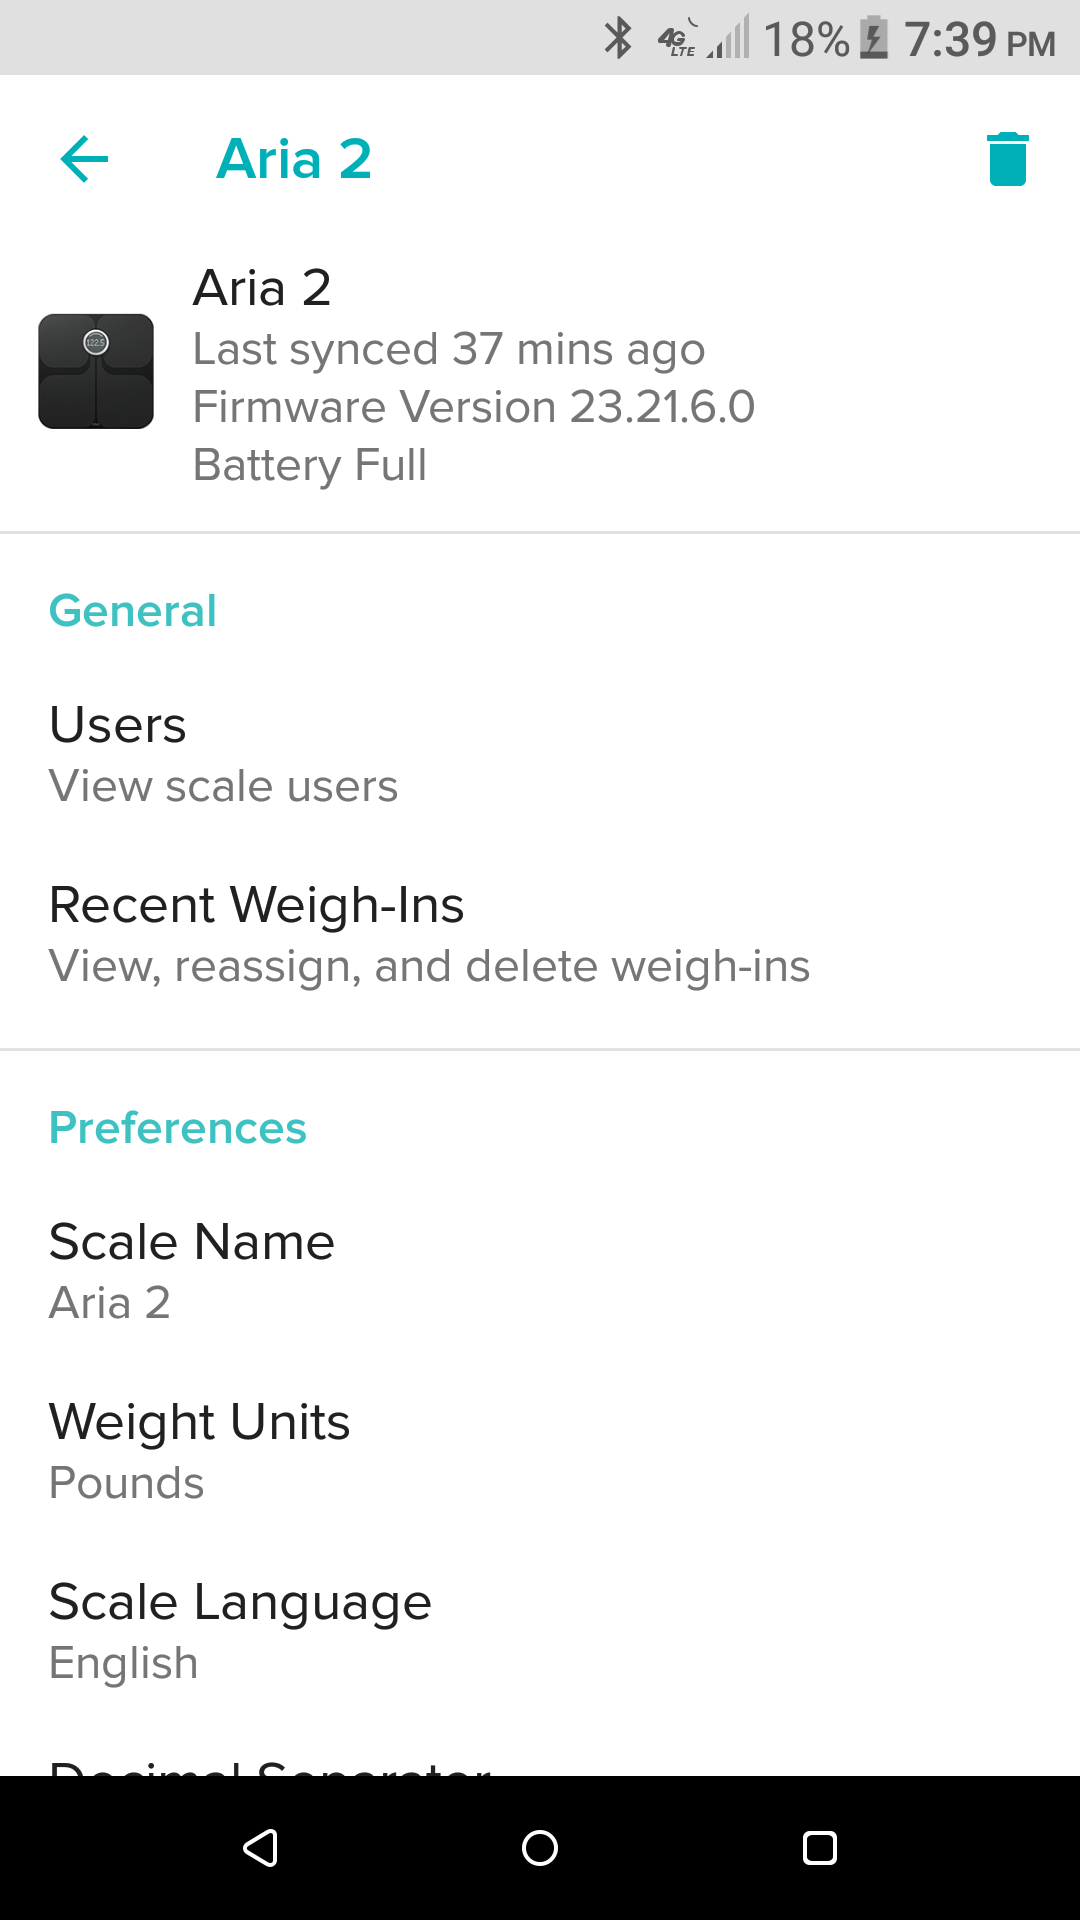 fitbit aria scale firmware update